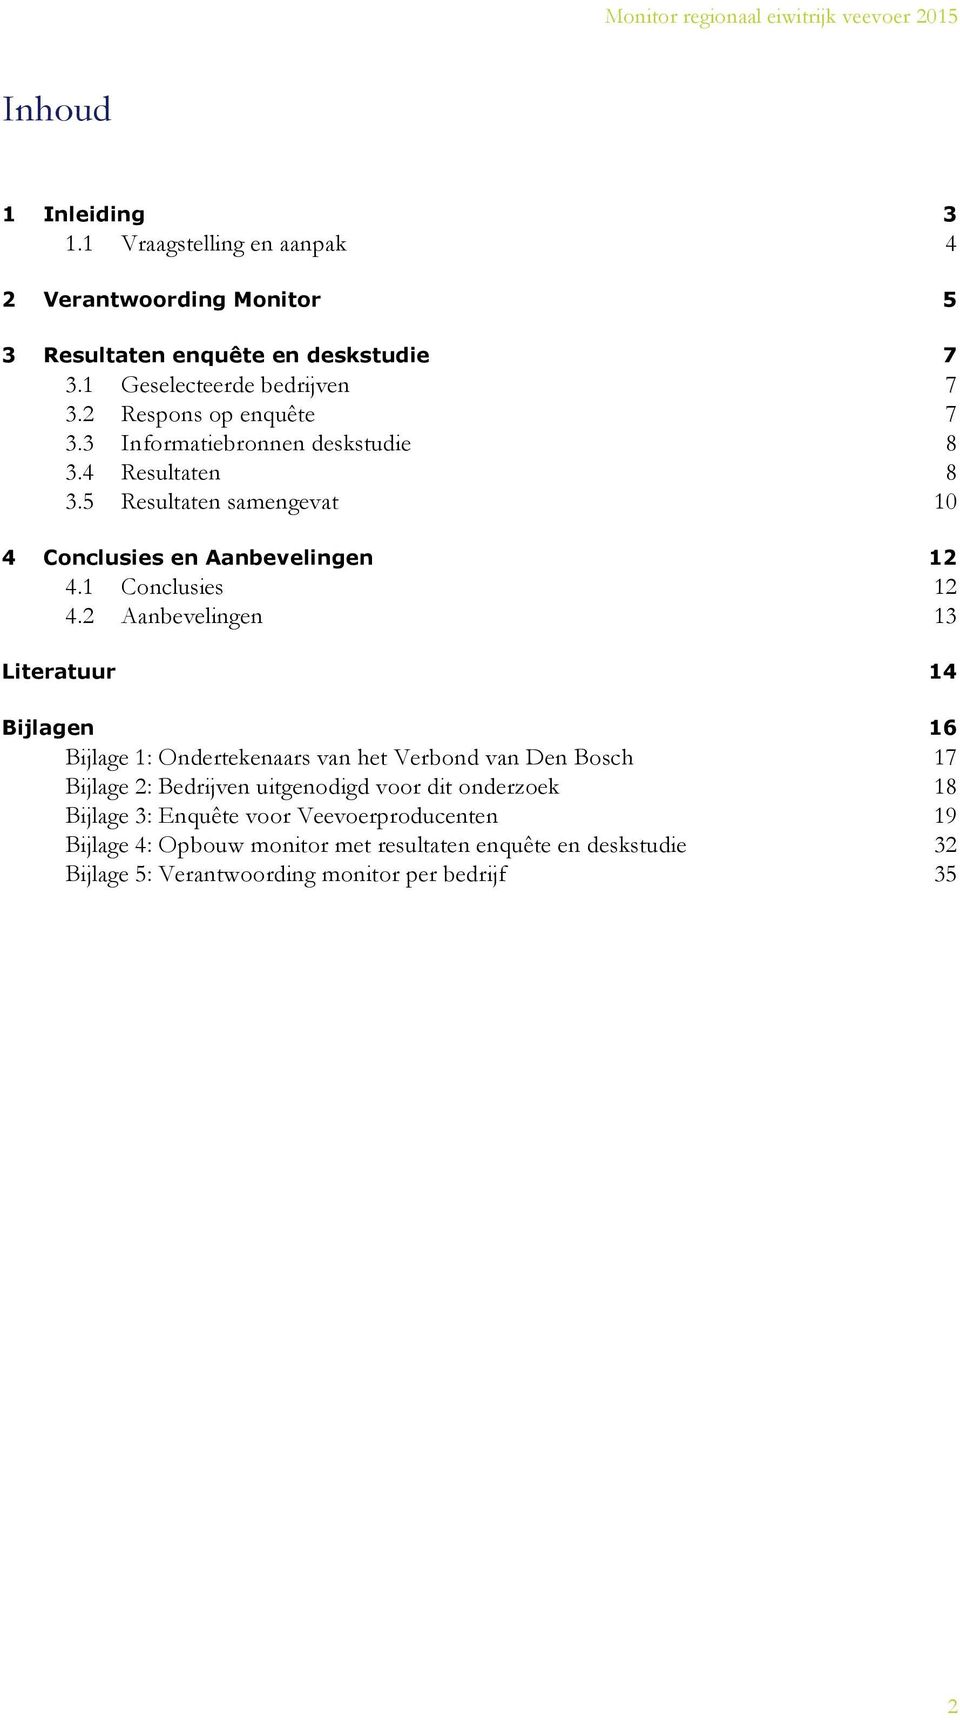 2 Aanbevelingen 13 Literatuur 14 Bijlagen 16 Bijlage 1: Ondertekenaars van het Verbond van Den Bosch 17 Bijlage 2: Bedrijven uitgenodigd voor dit onderzoek